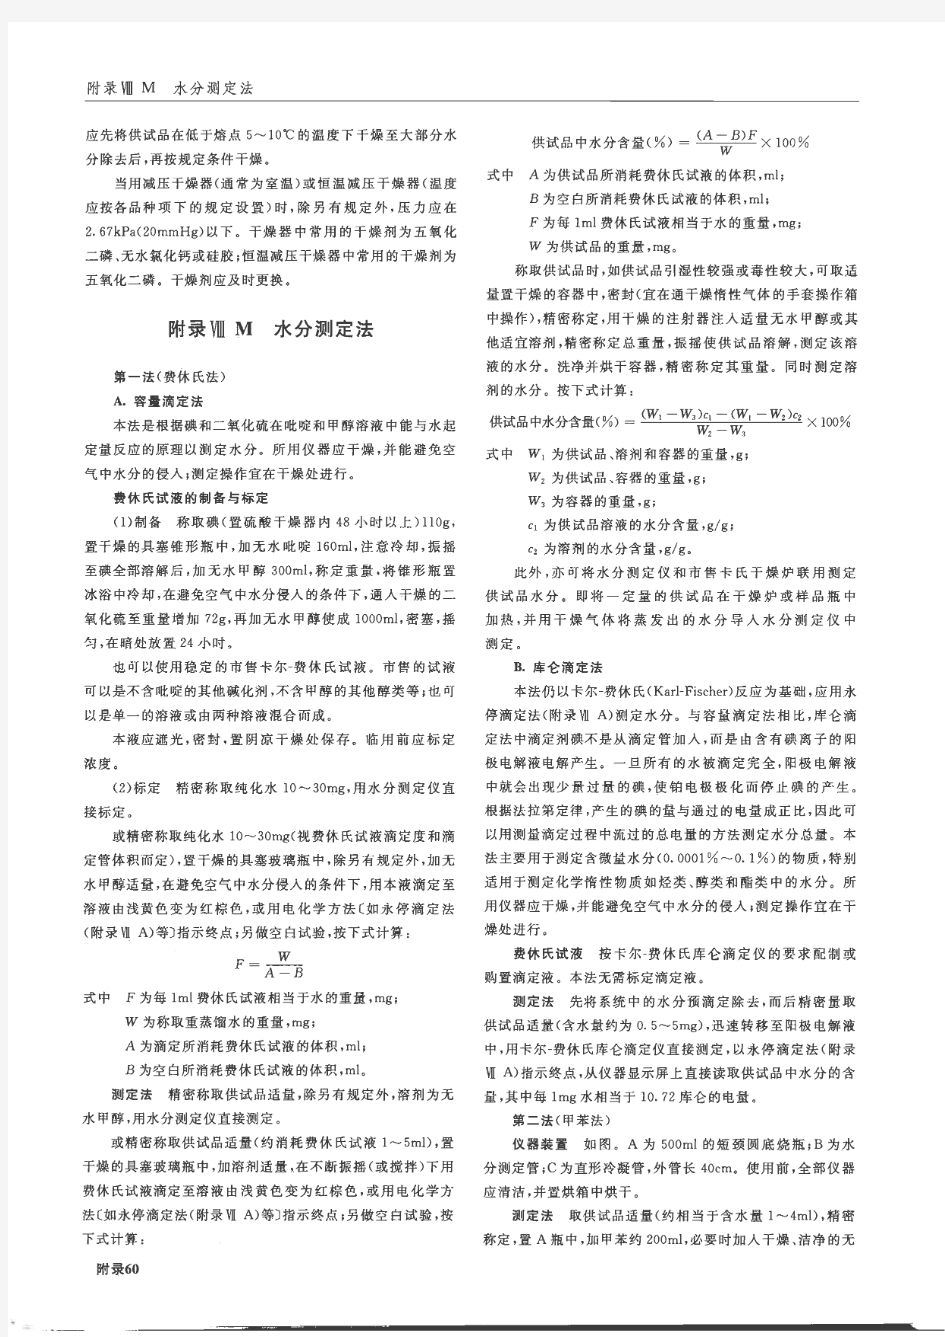 《中国药典》2010年版2部水分测定法